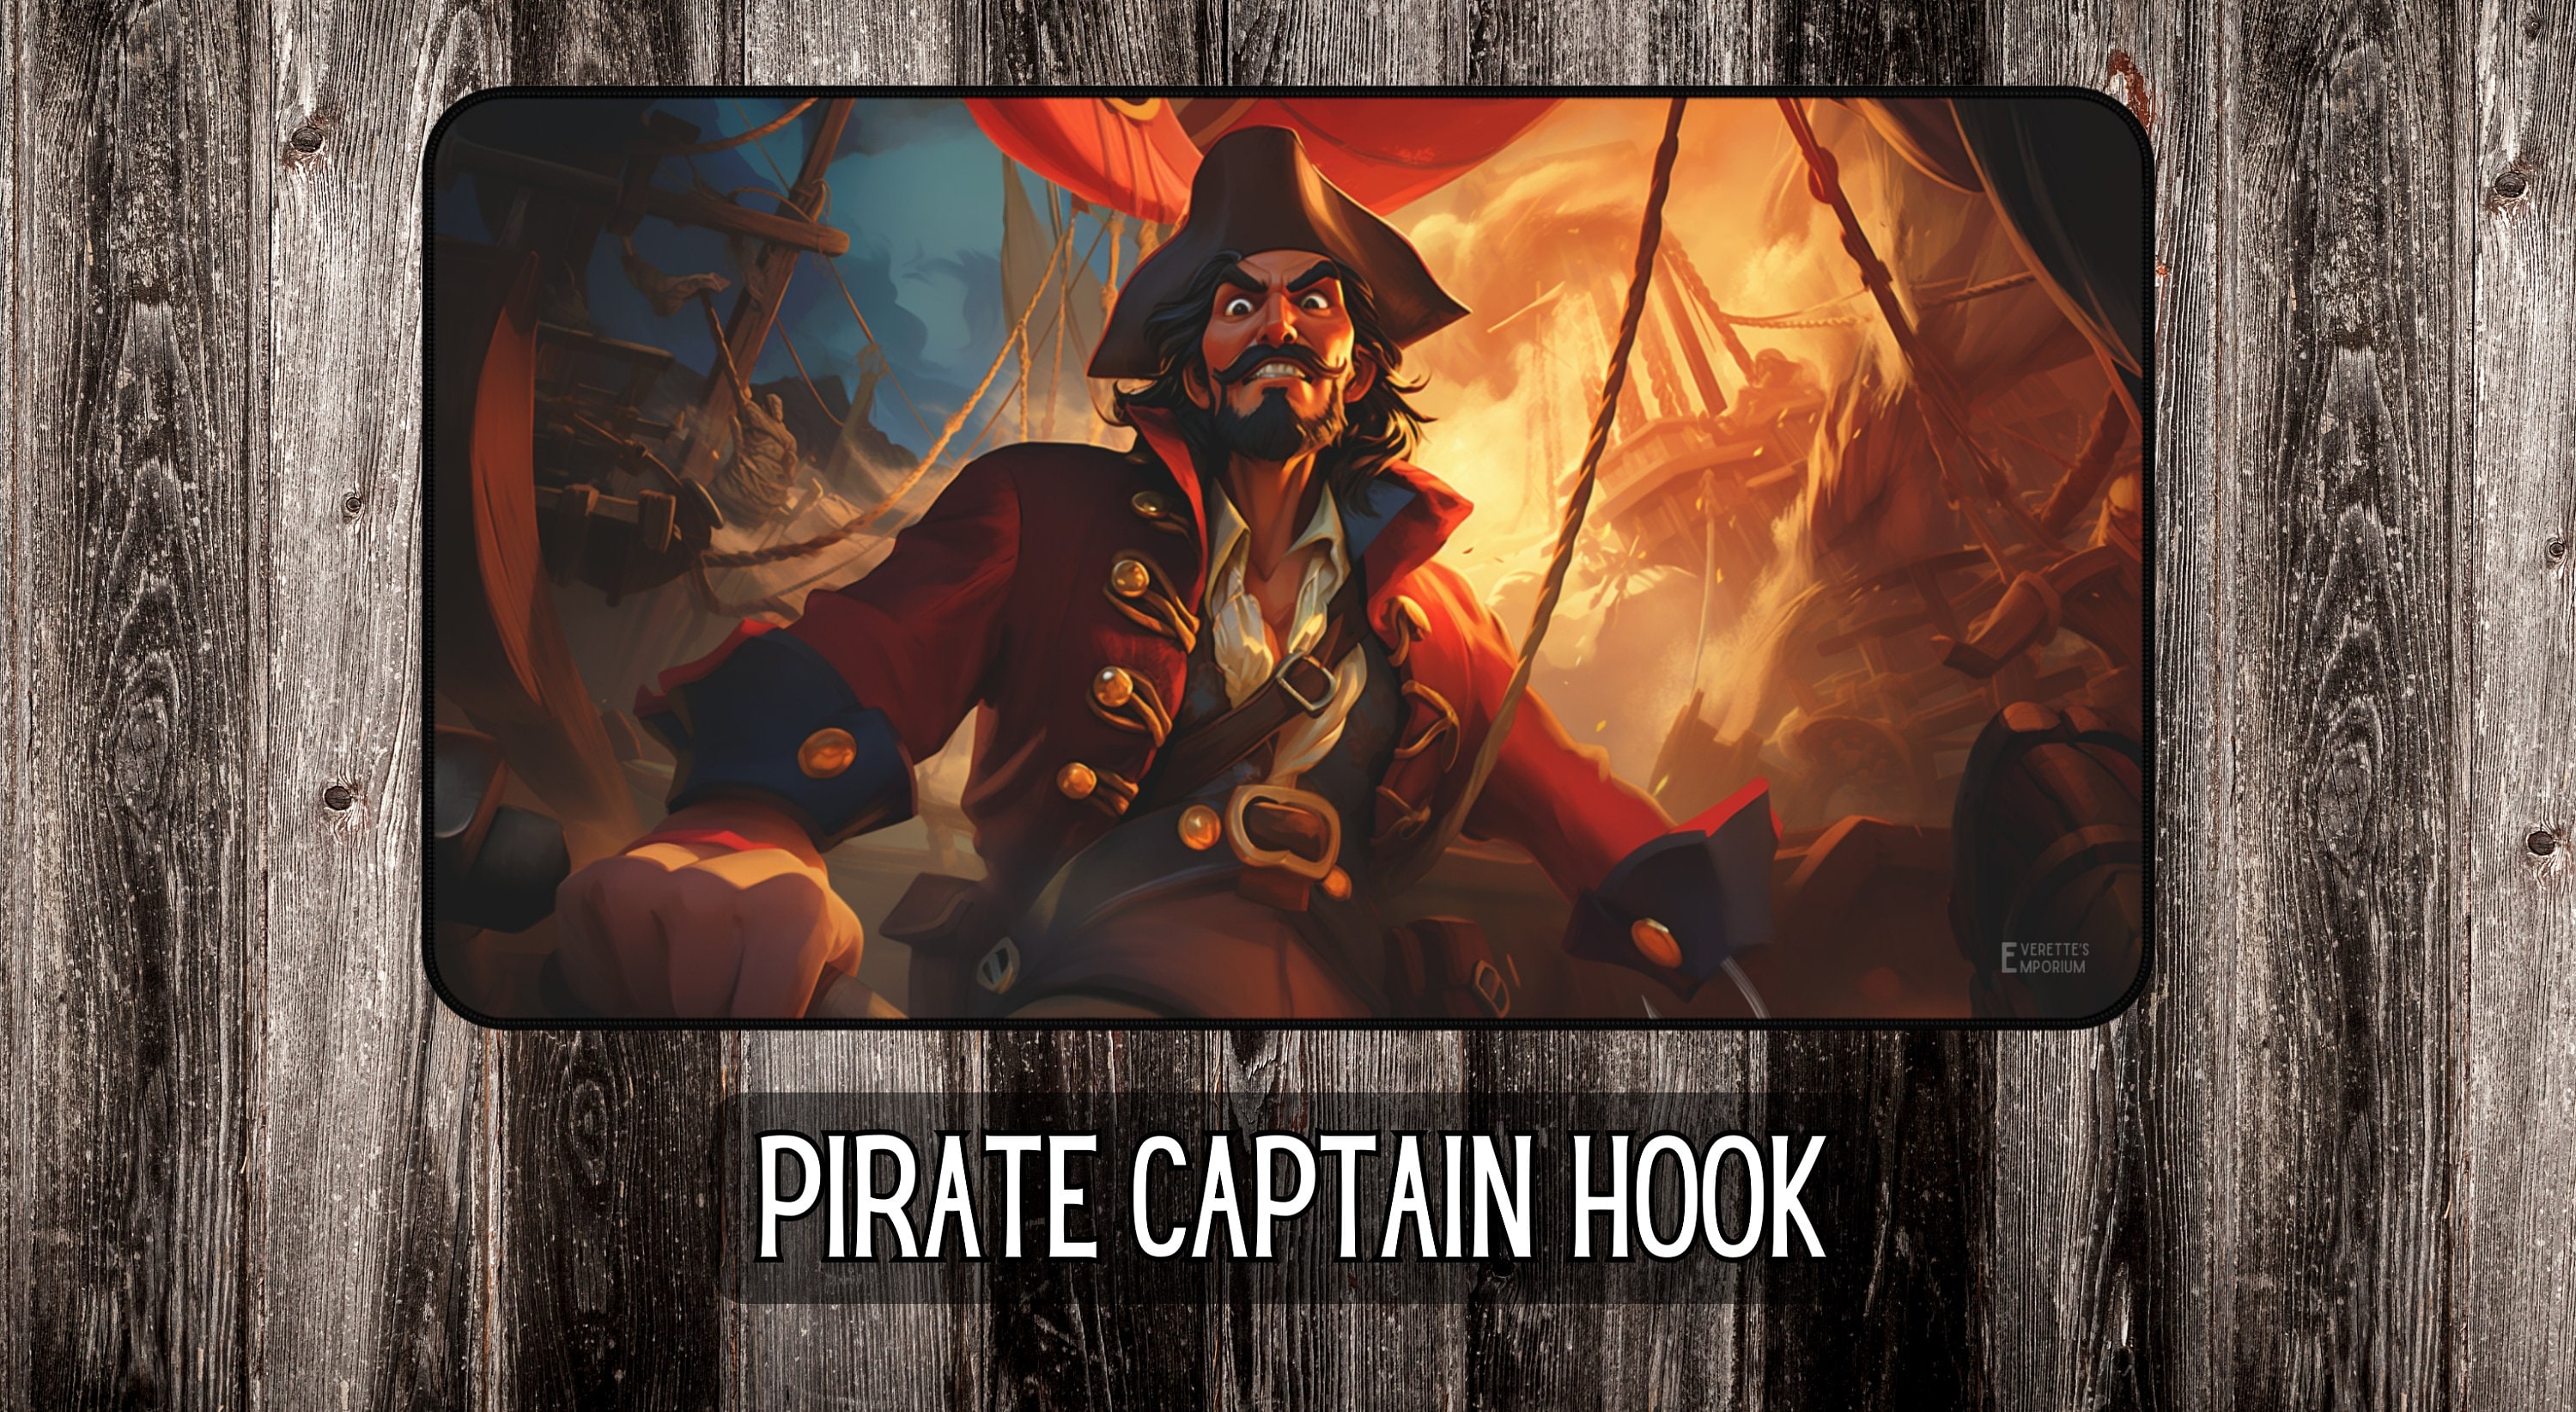 Pirate Captain Hook Lorcana Game Mat 12x22 Disney Peter Pan Themed